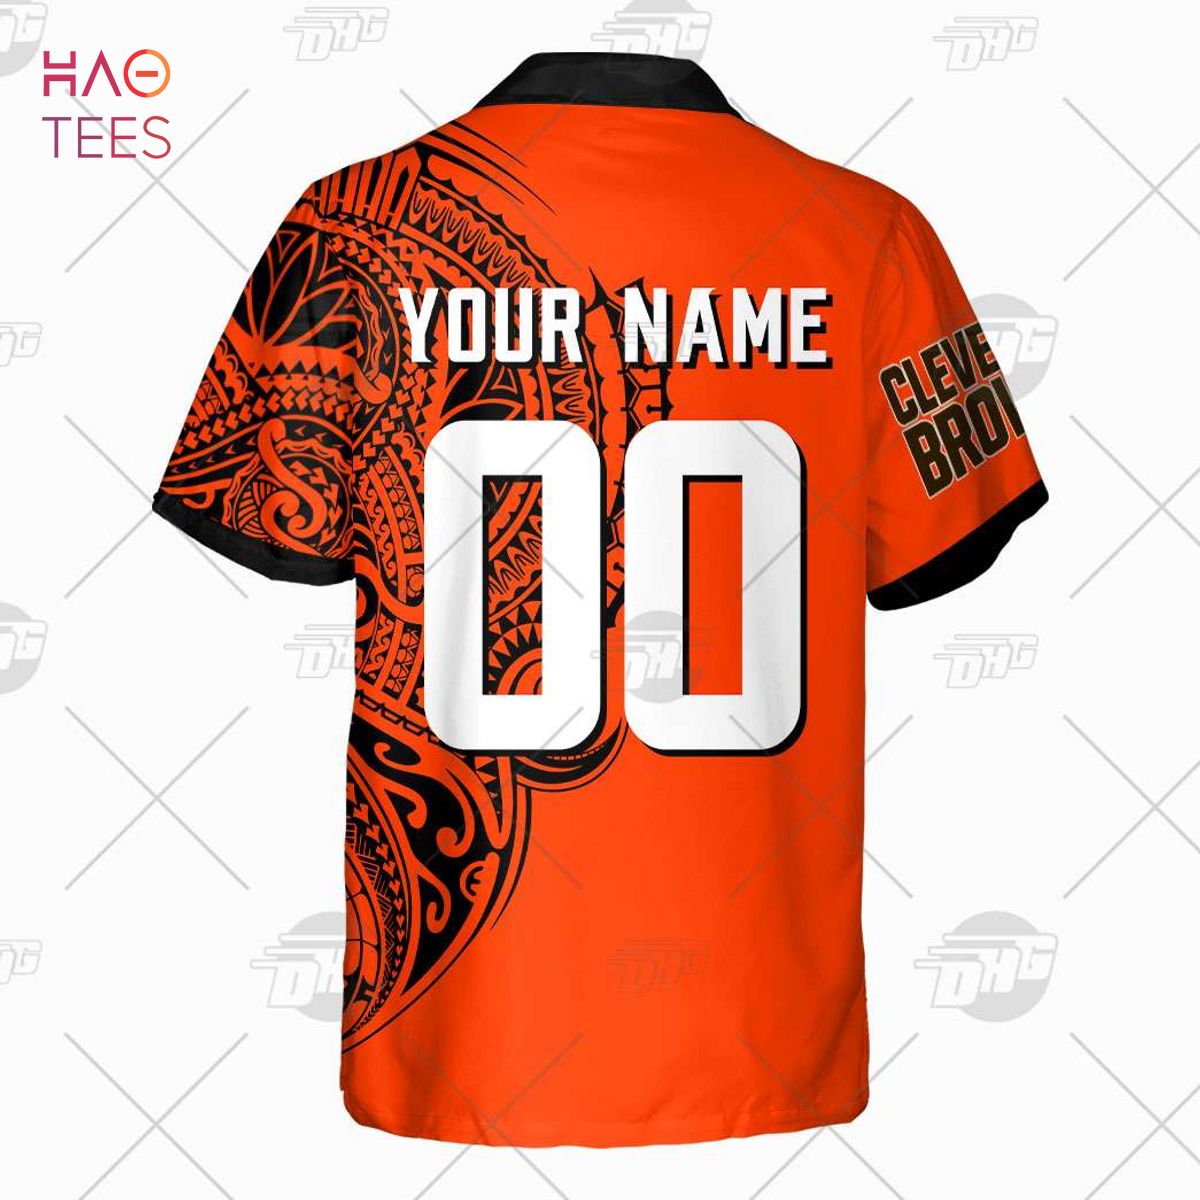 NFL Cleveland Browns Fans Louis Vuitton Hawaiian Shirt For Men And